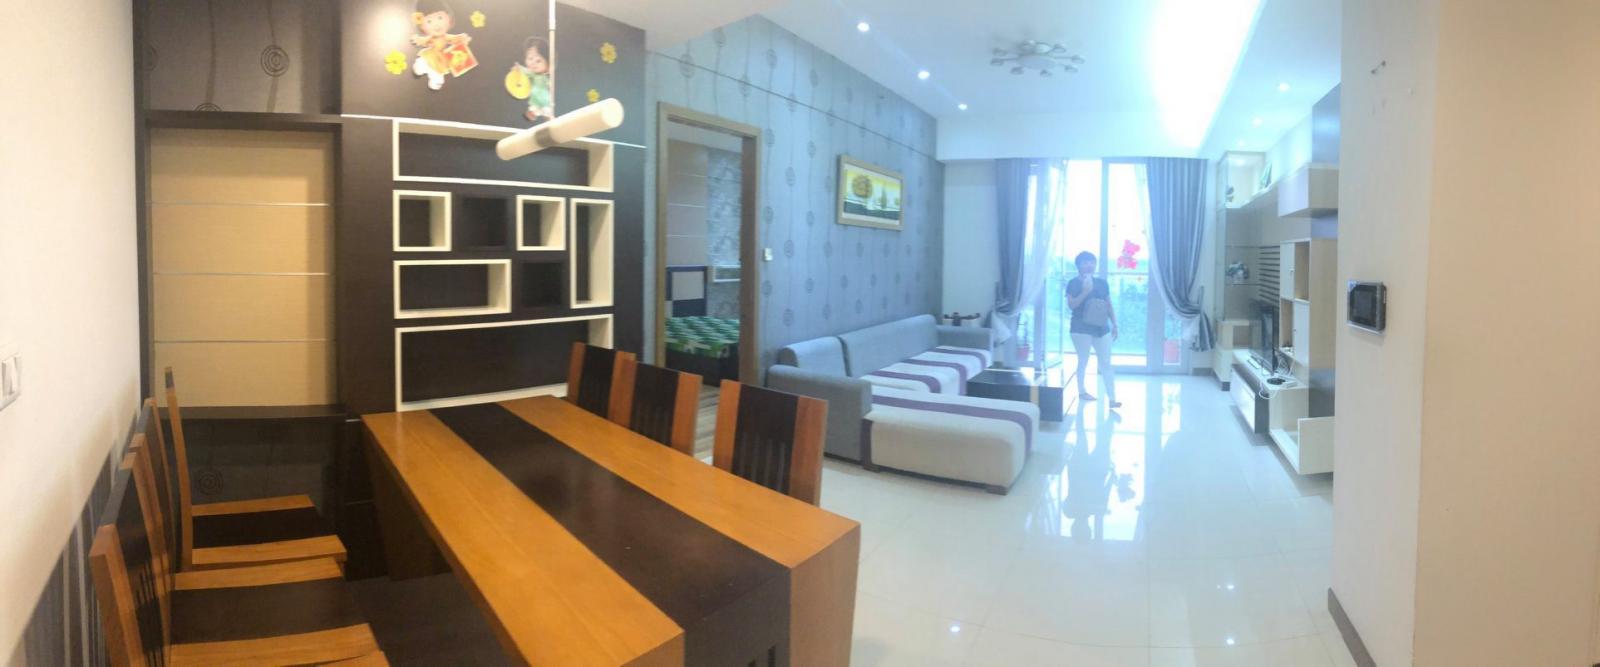 Sốc ! 18 Triệu, thuê căn hộ 3 phòng ngủ/2WC Sài Gòn Airport Plaza full tiện nghi đẹp, view thoáng - Xem Ngay